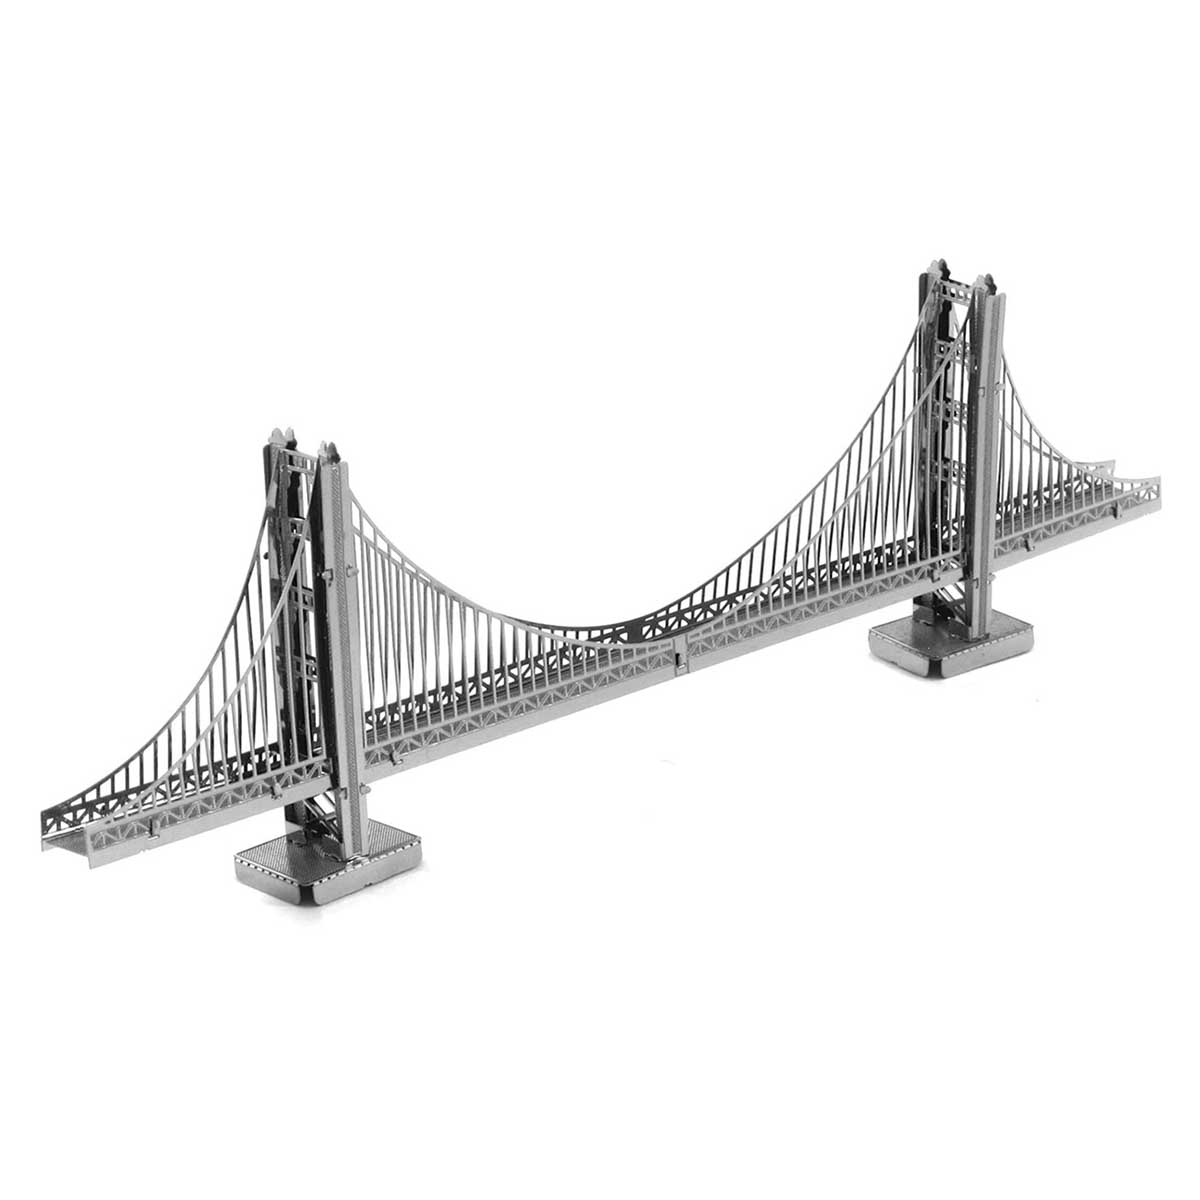 Golden Gate Bridge San Francisco 3D Puzzle